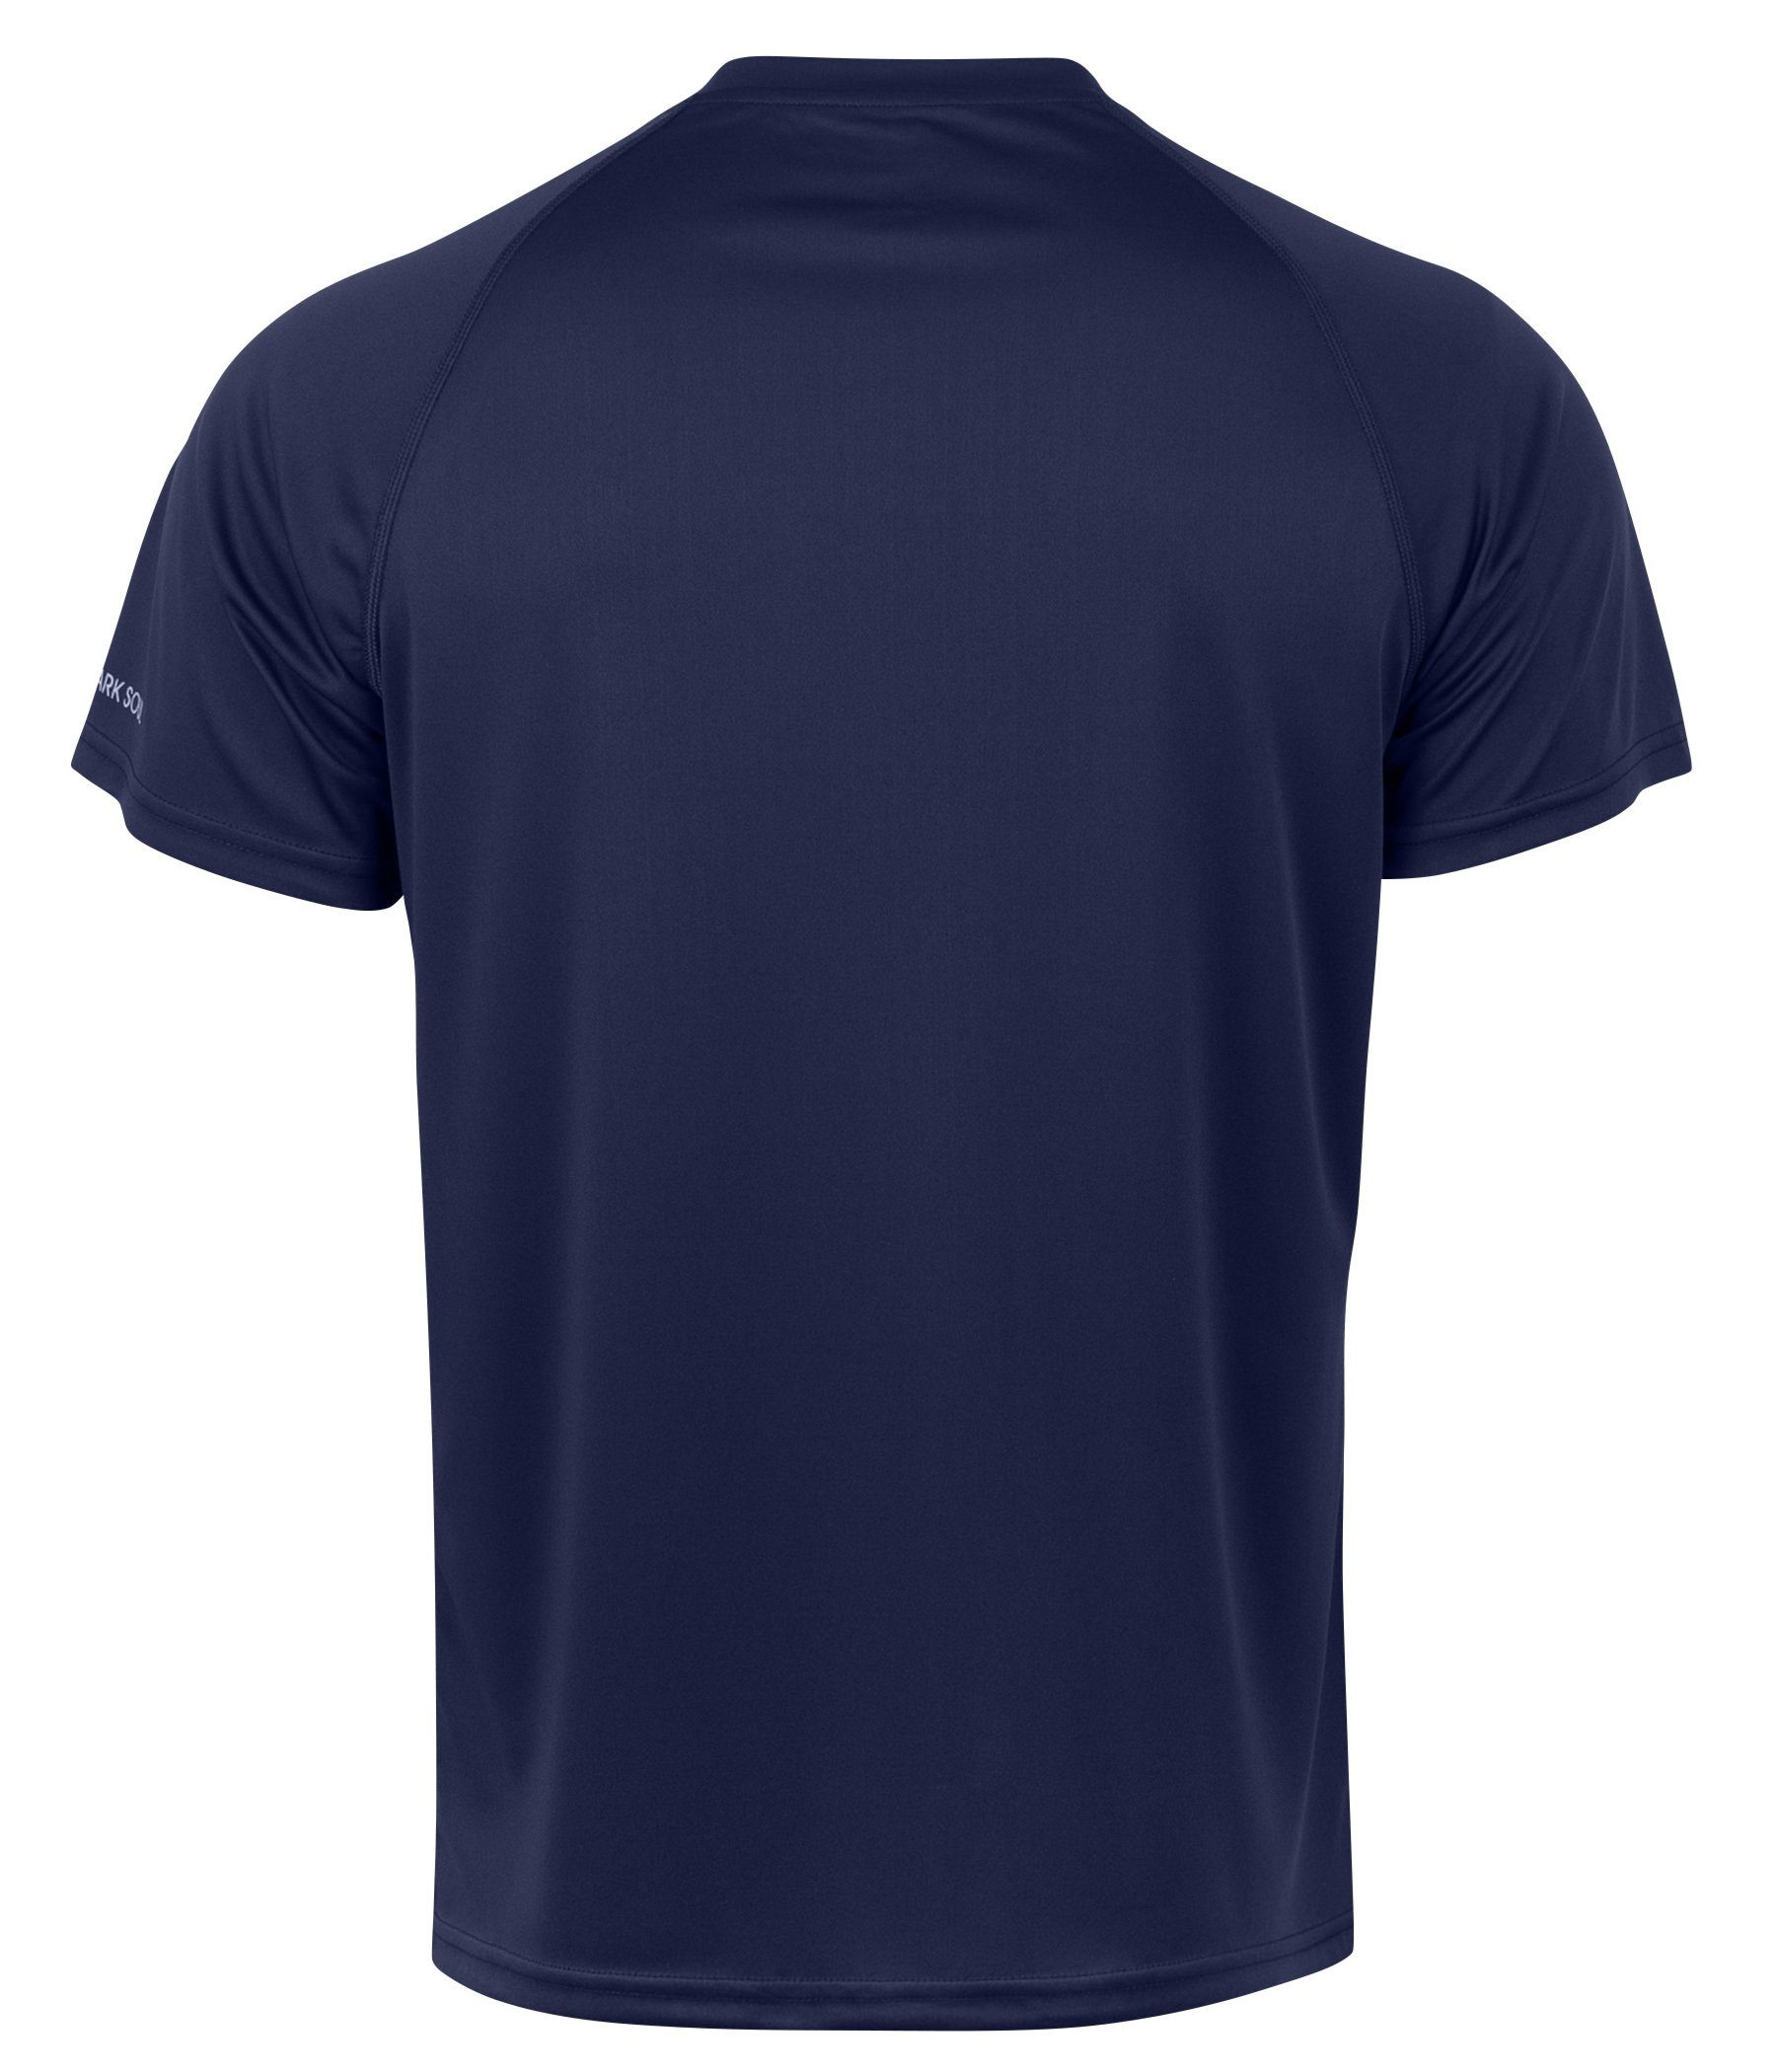 Marineblau Stark T-Shirt Soul®